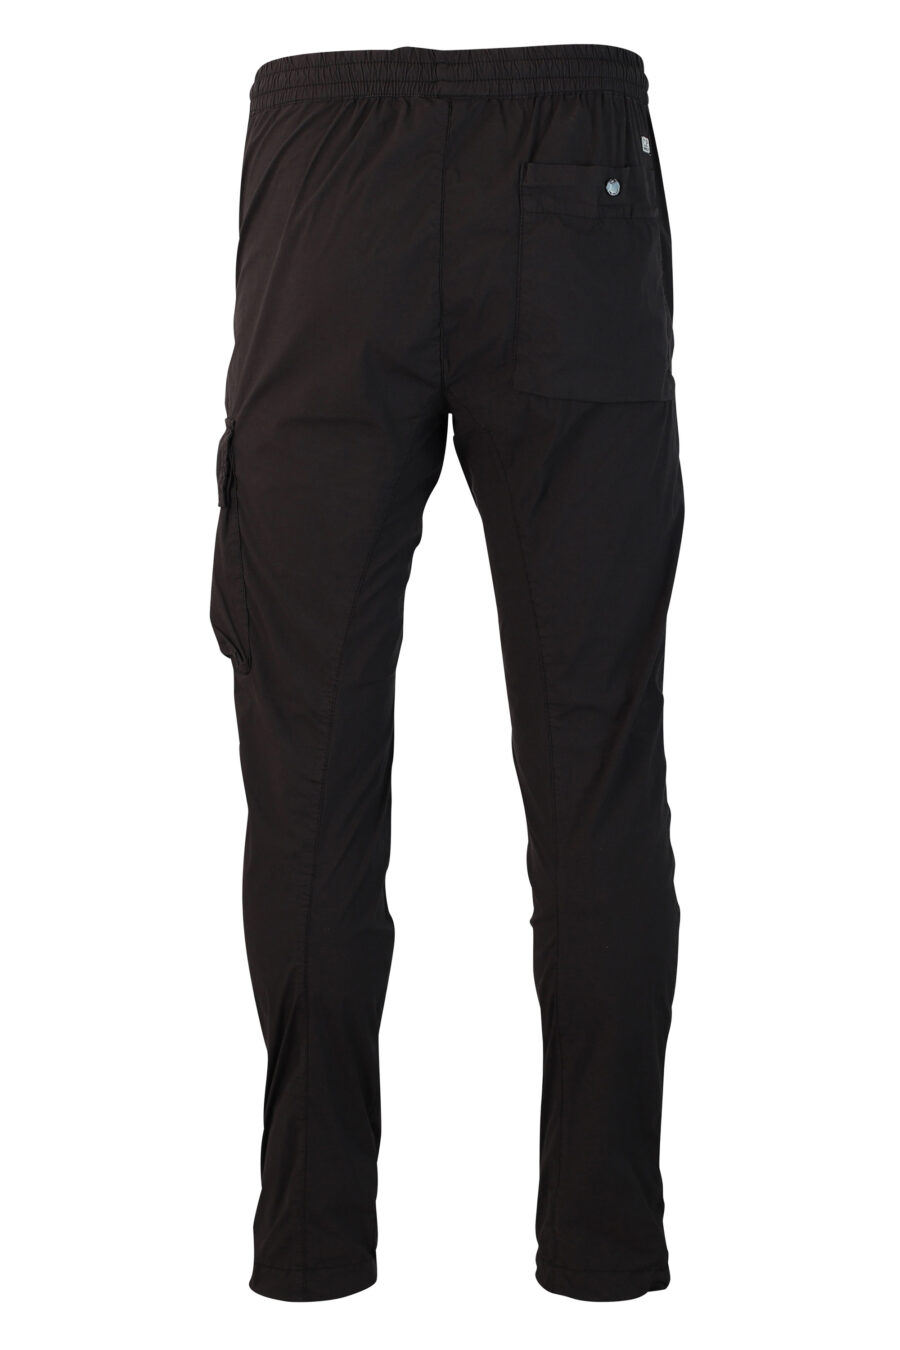 Pantalón negro con minilogo circular lateral - IMG 9915 1